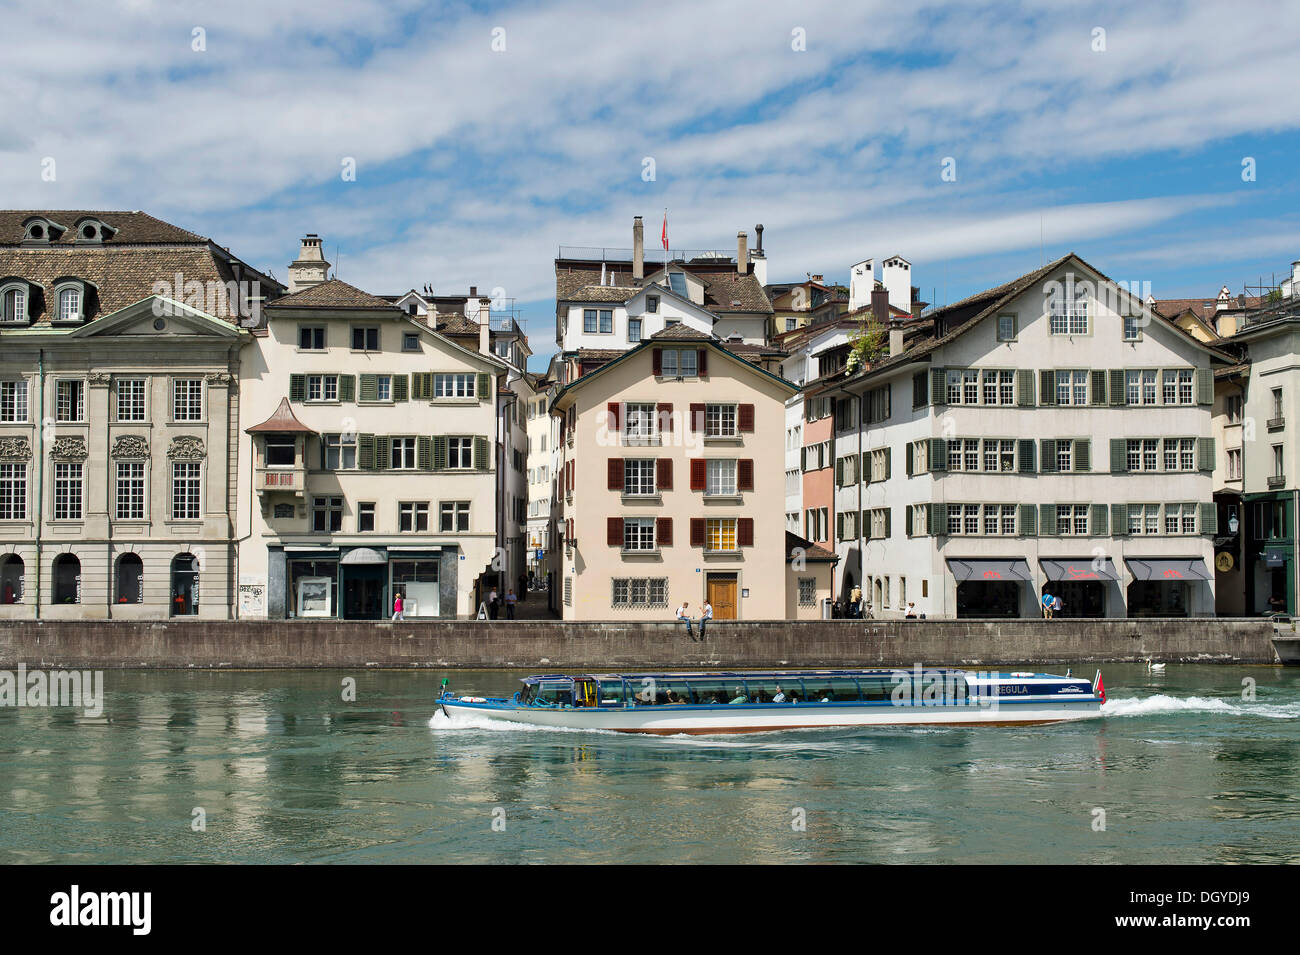 Una barca sul fiume Limmat, quartiere storico, Zurigo, Svizzera, Europa Foto Stock